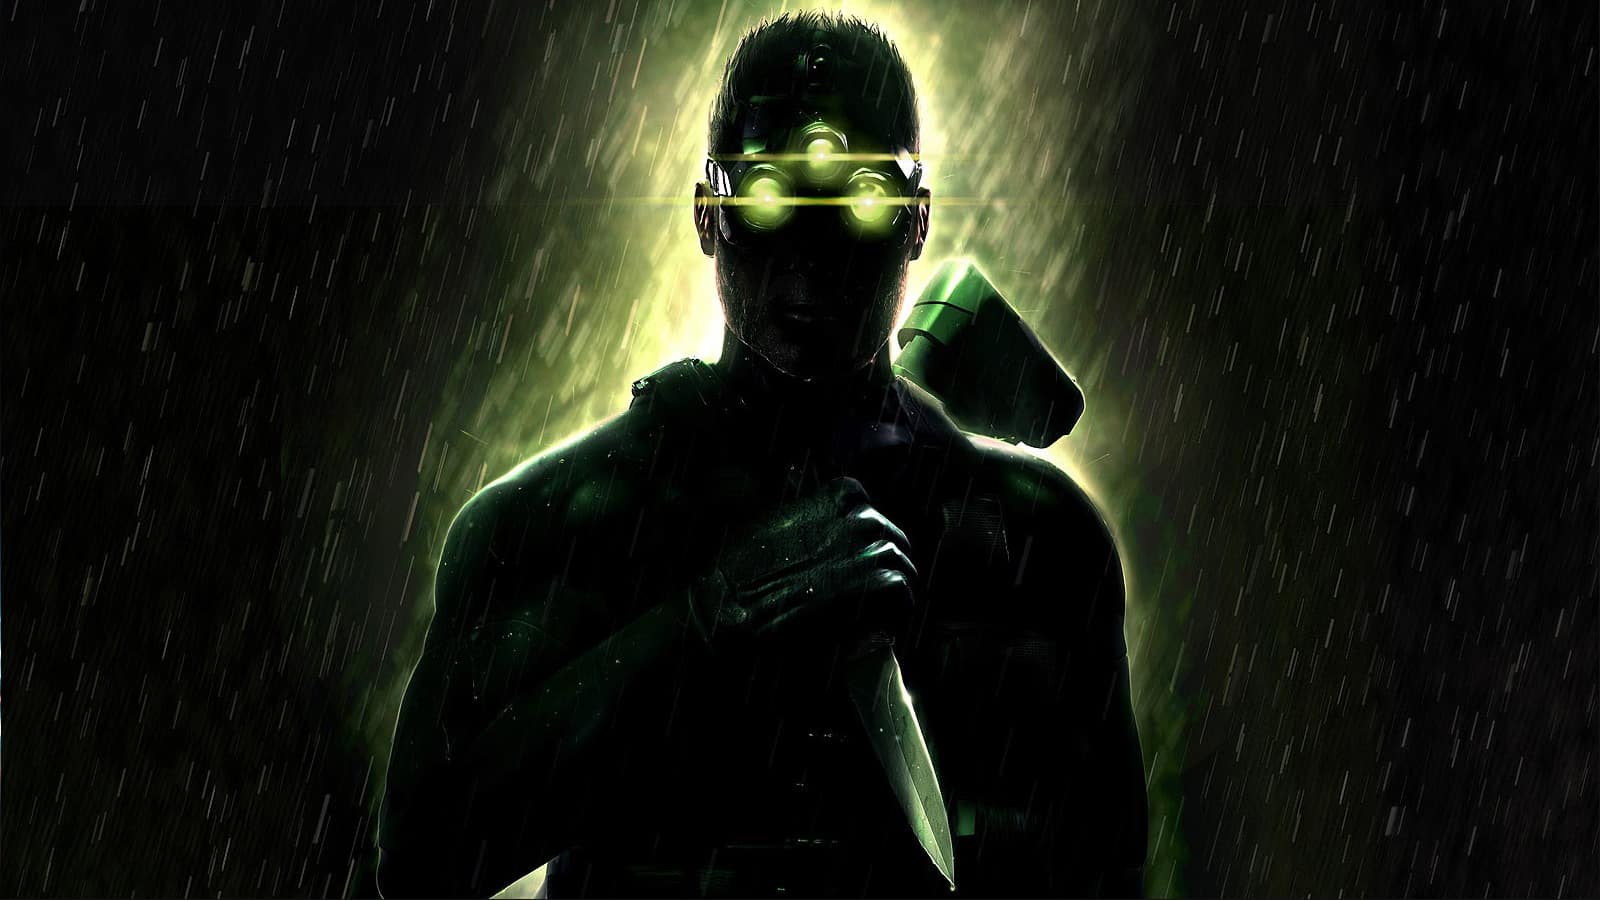 Splinter Cell remake: Sam Fisher story leaks, gameplay - Dexerto